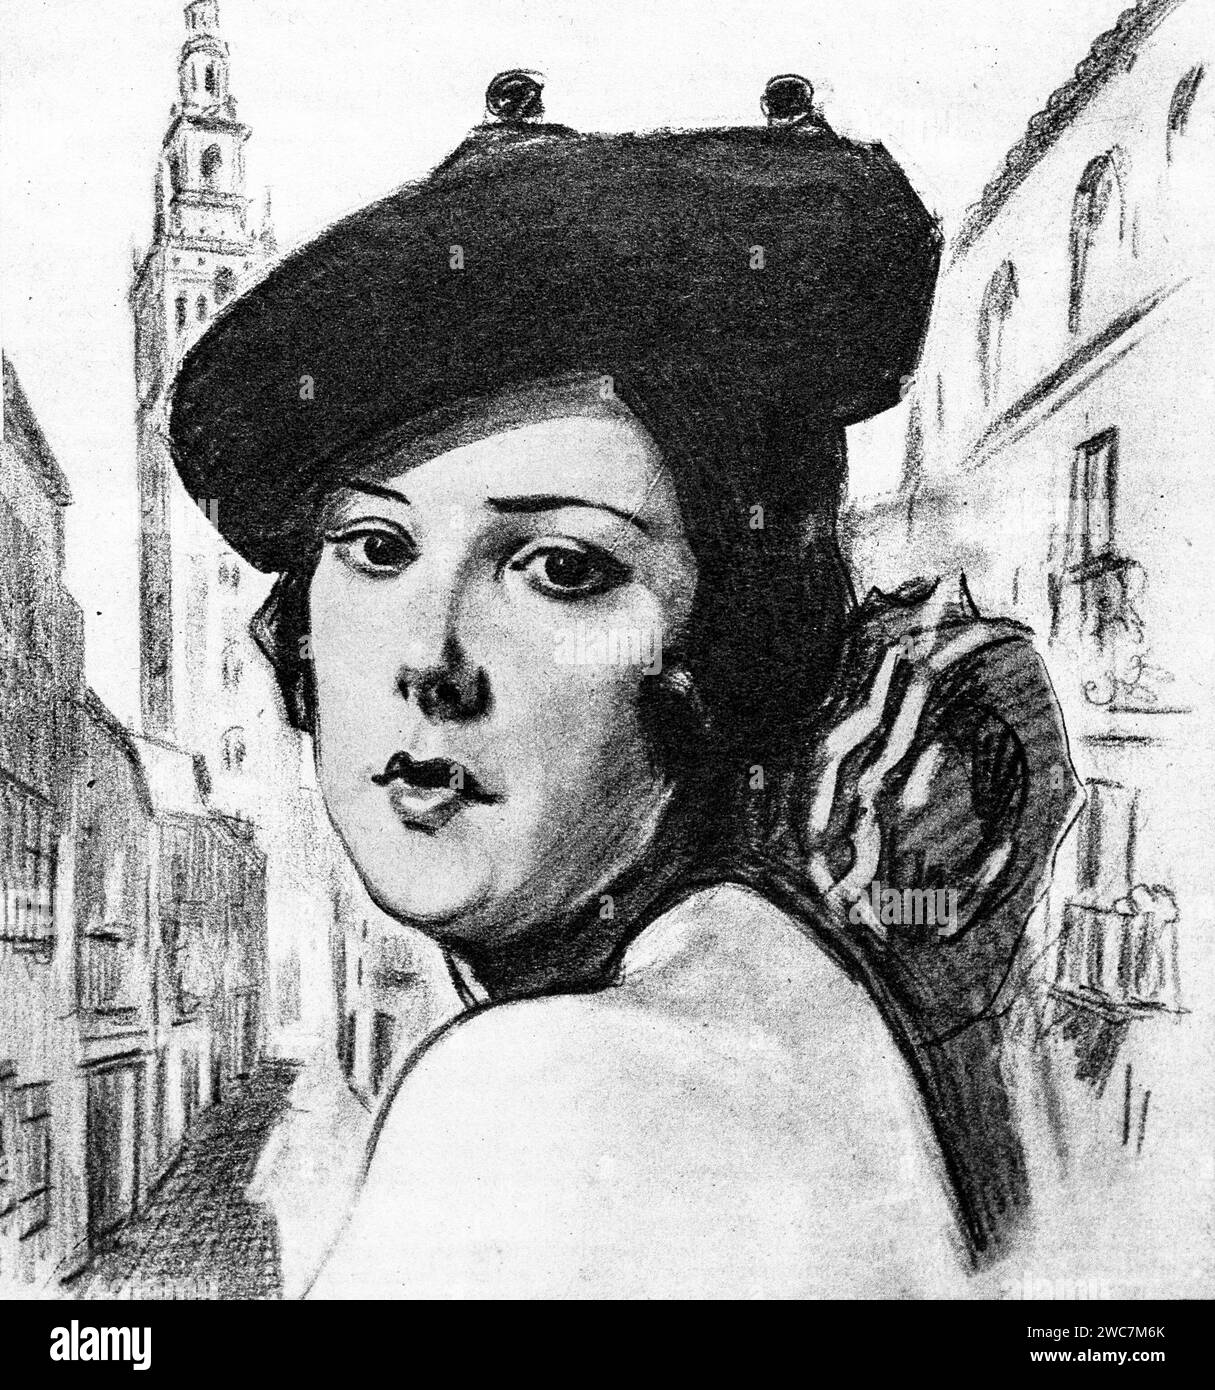 Un croquis au charbon de bois de 1938 de Laura de Santelmo (1897-1977) la danseuse de flamenco espagnole. Banque D'Images